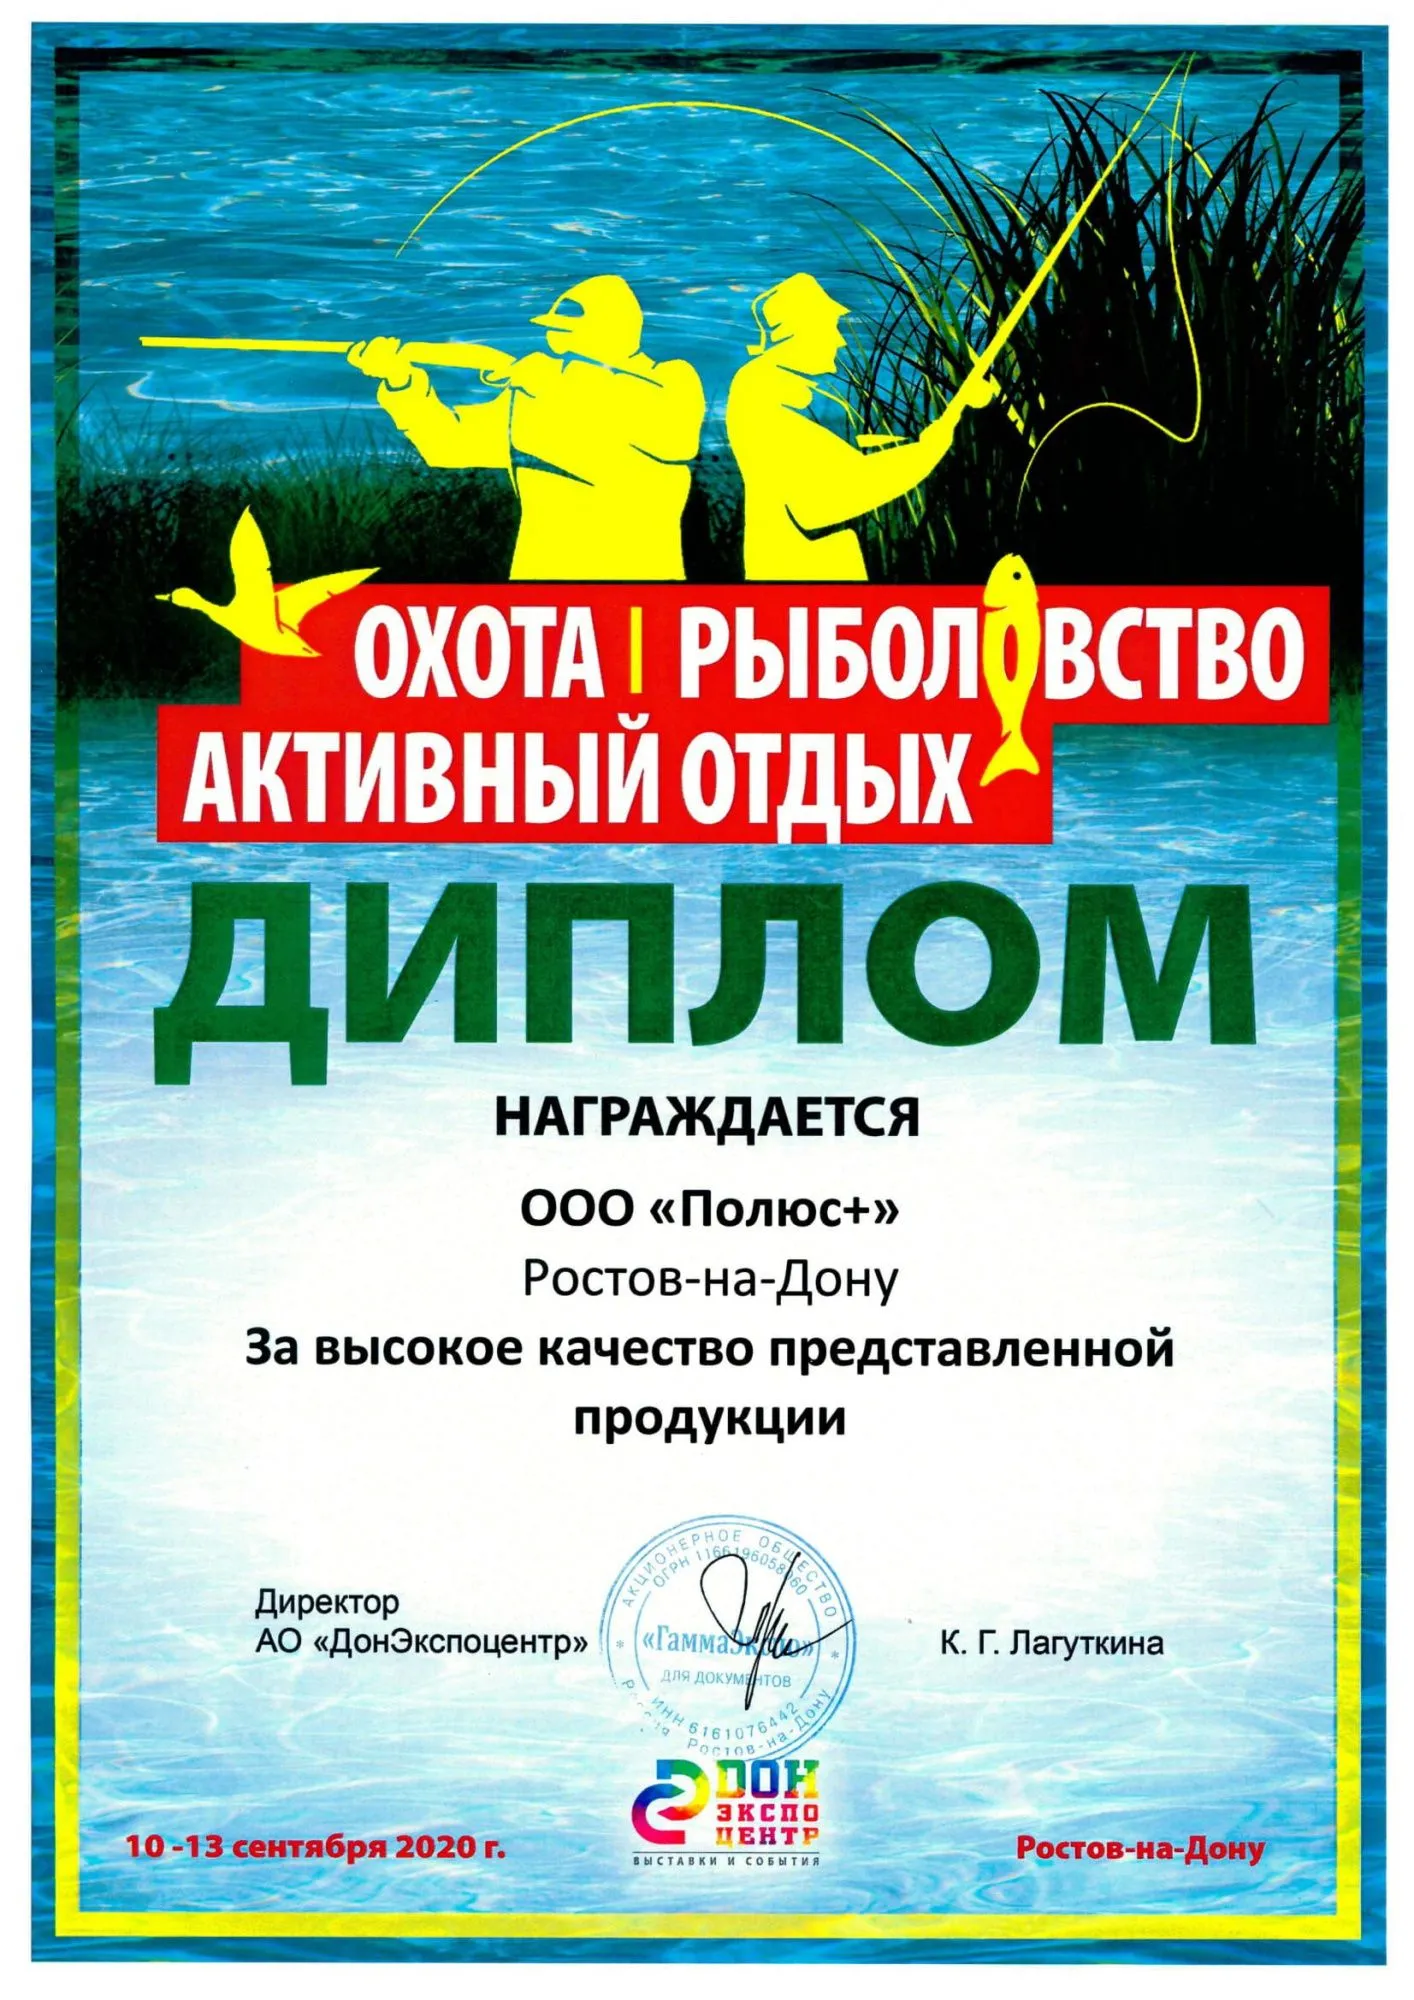 Диплом участника выставки Охота. Рыболовство. Активный отдых 2020